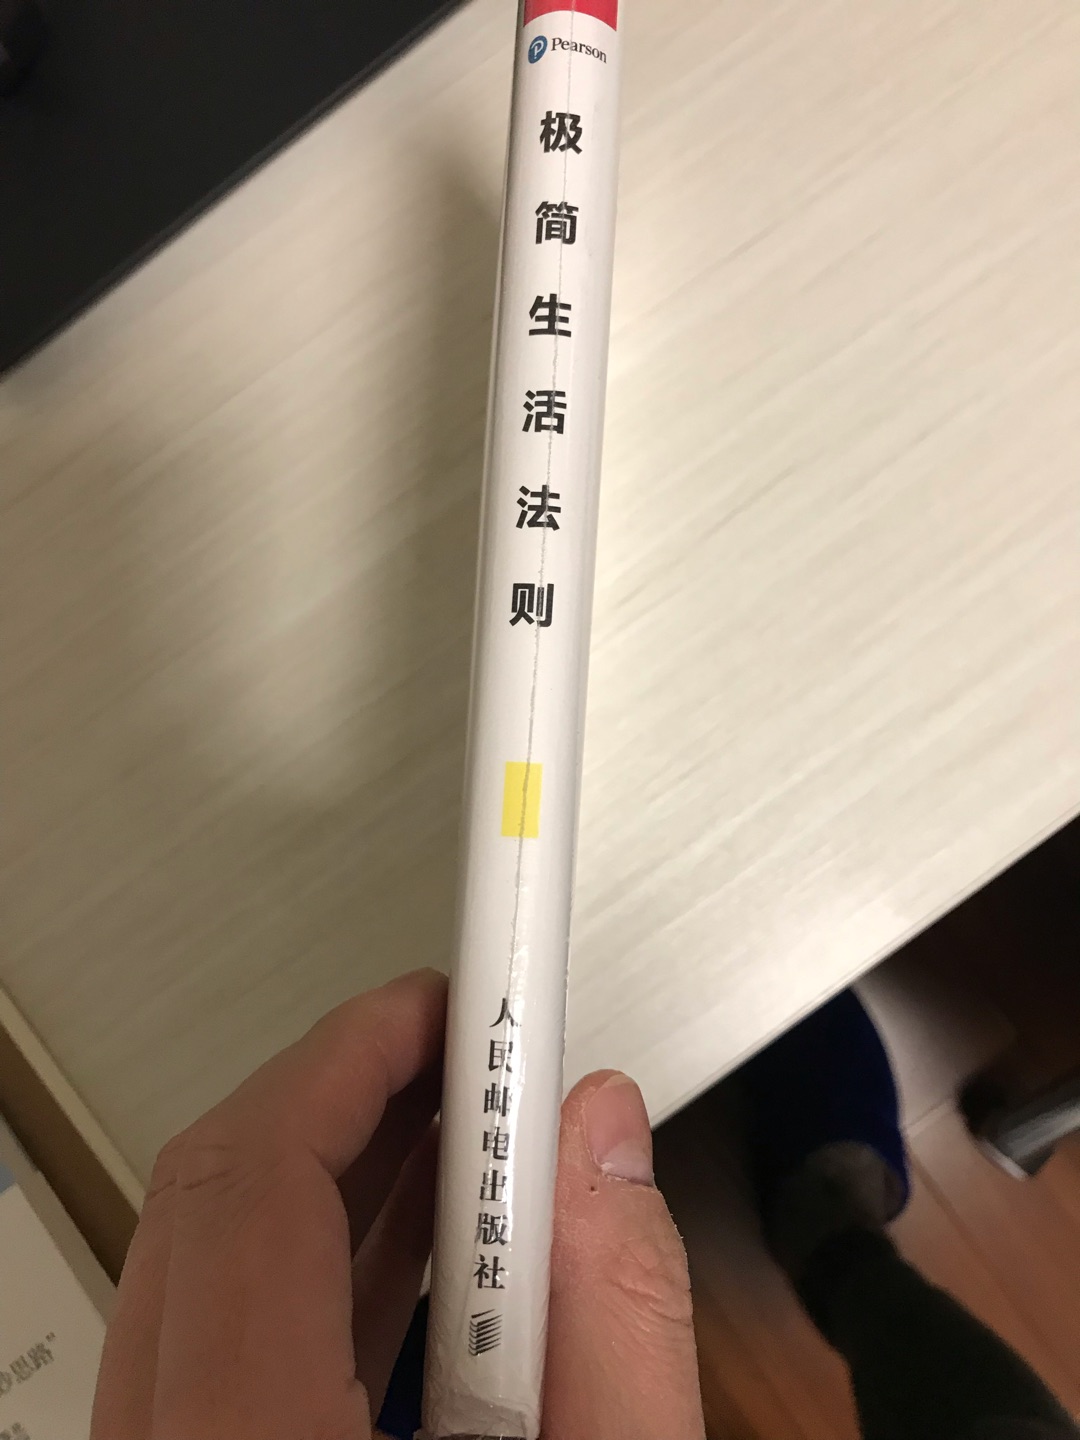 我是江苏科技大学的老师，学习这本书希望能提高自己的工作效率和工作满意度，提高生活品质。